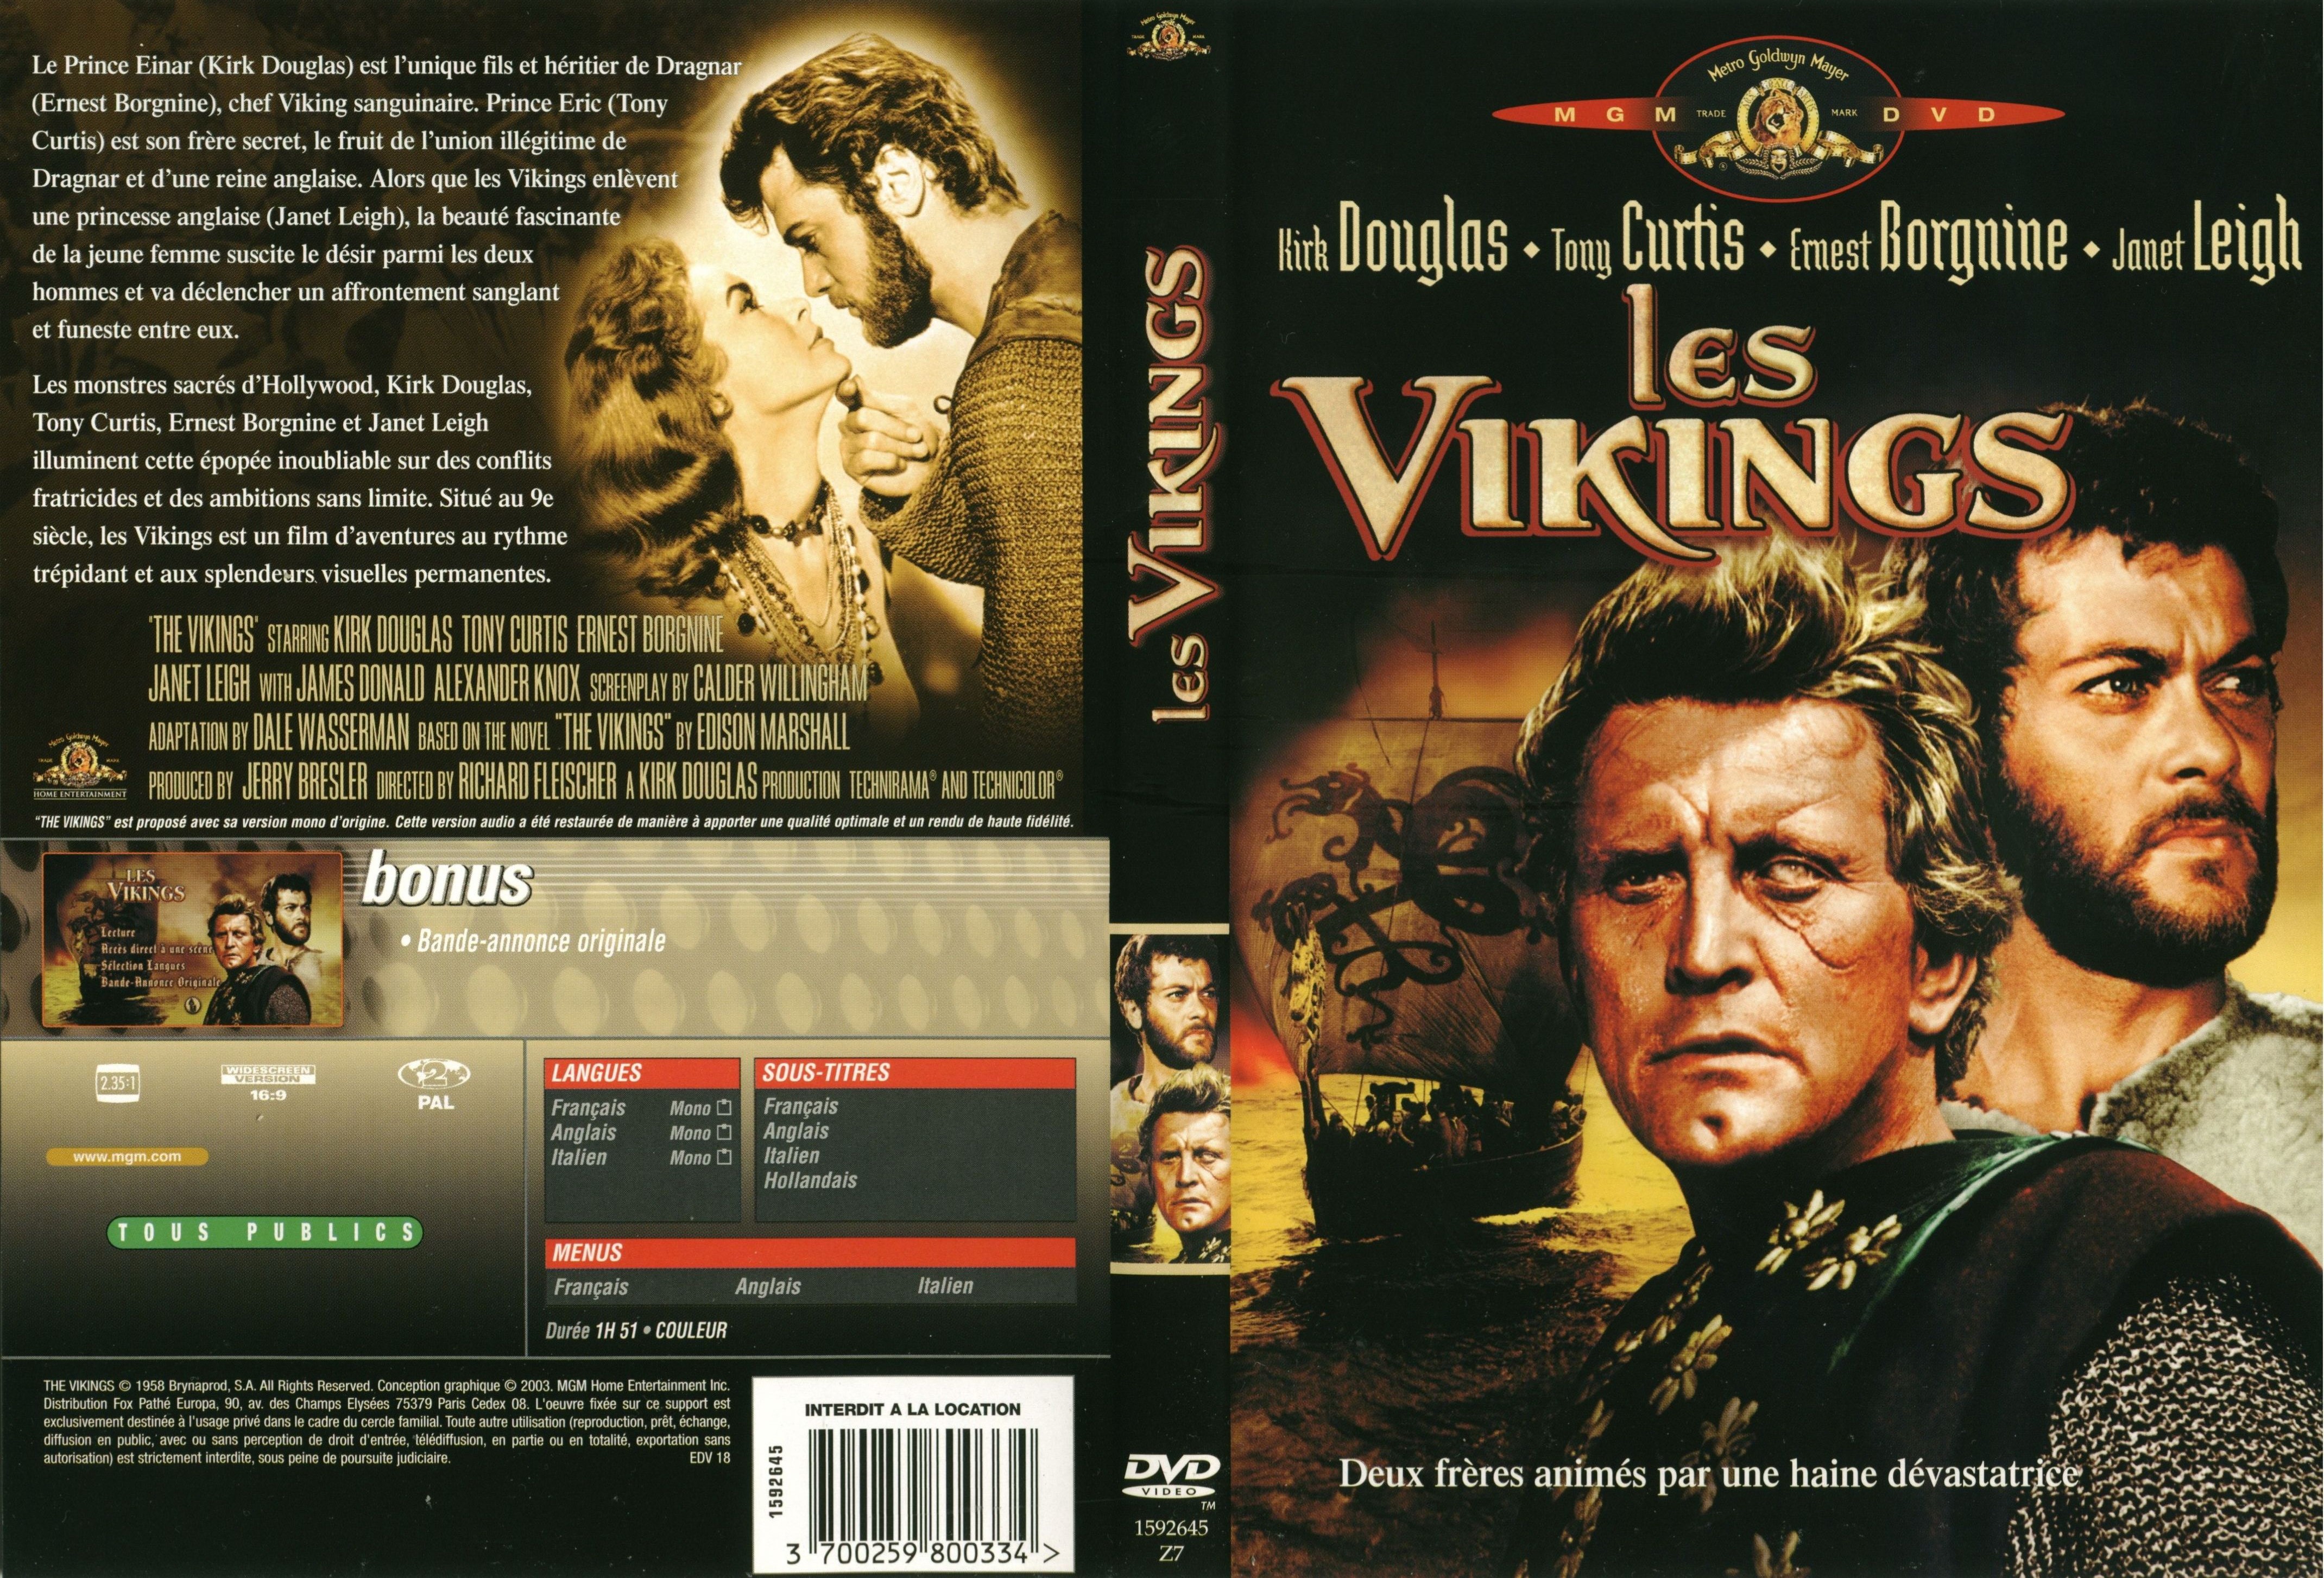 Jaquette DVD Les vikings